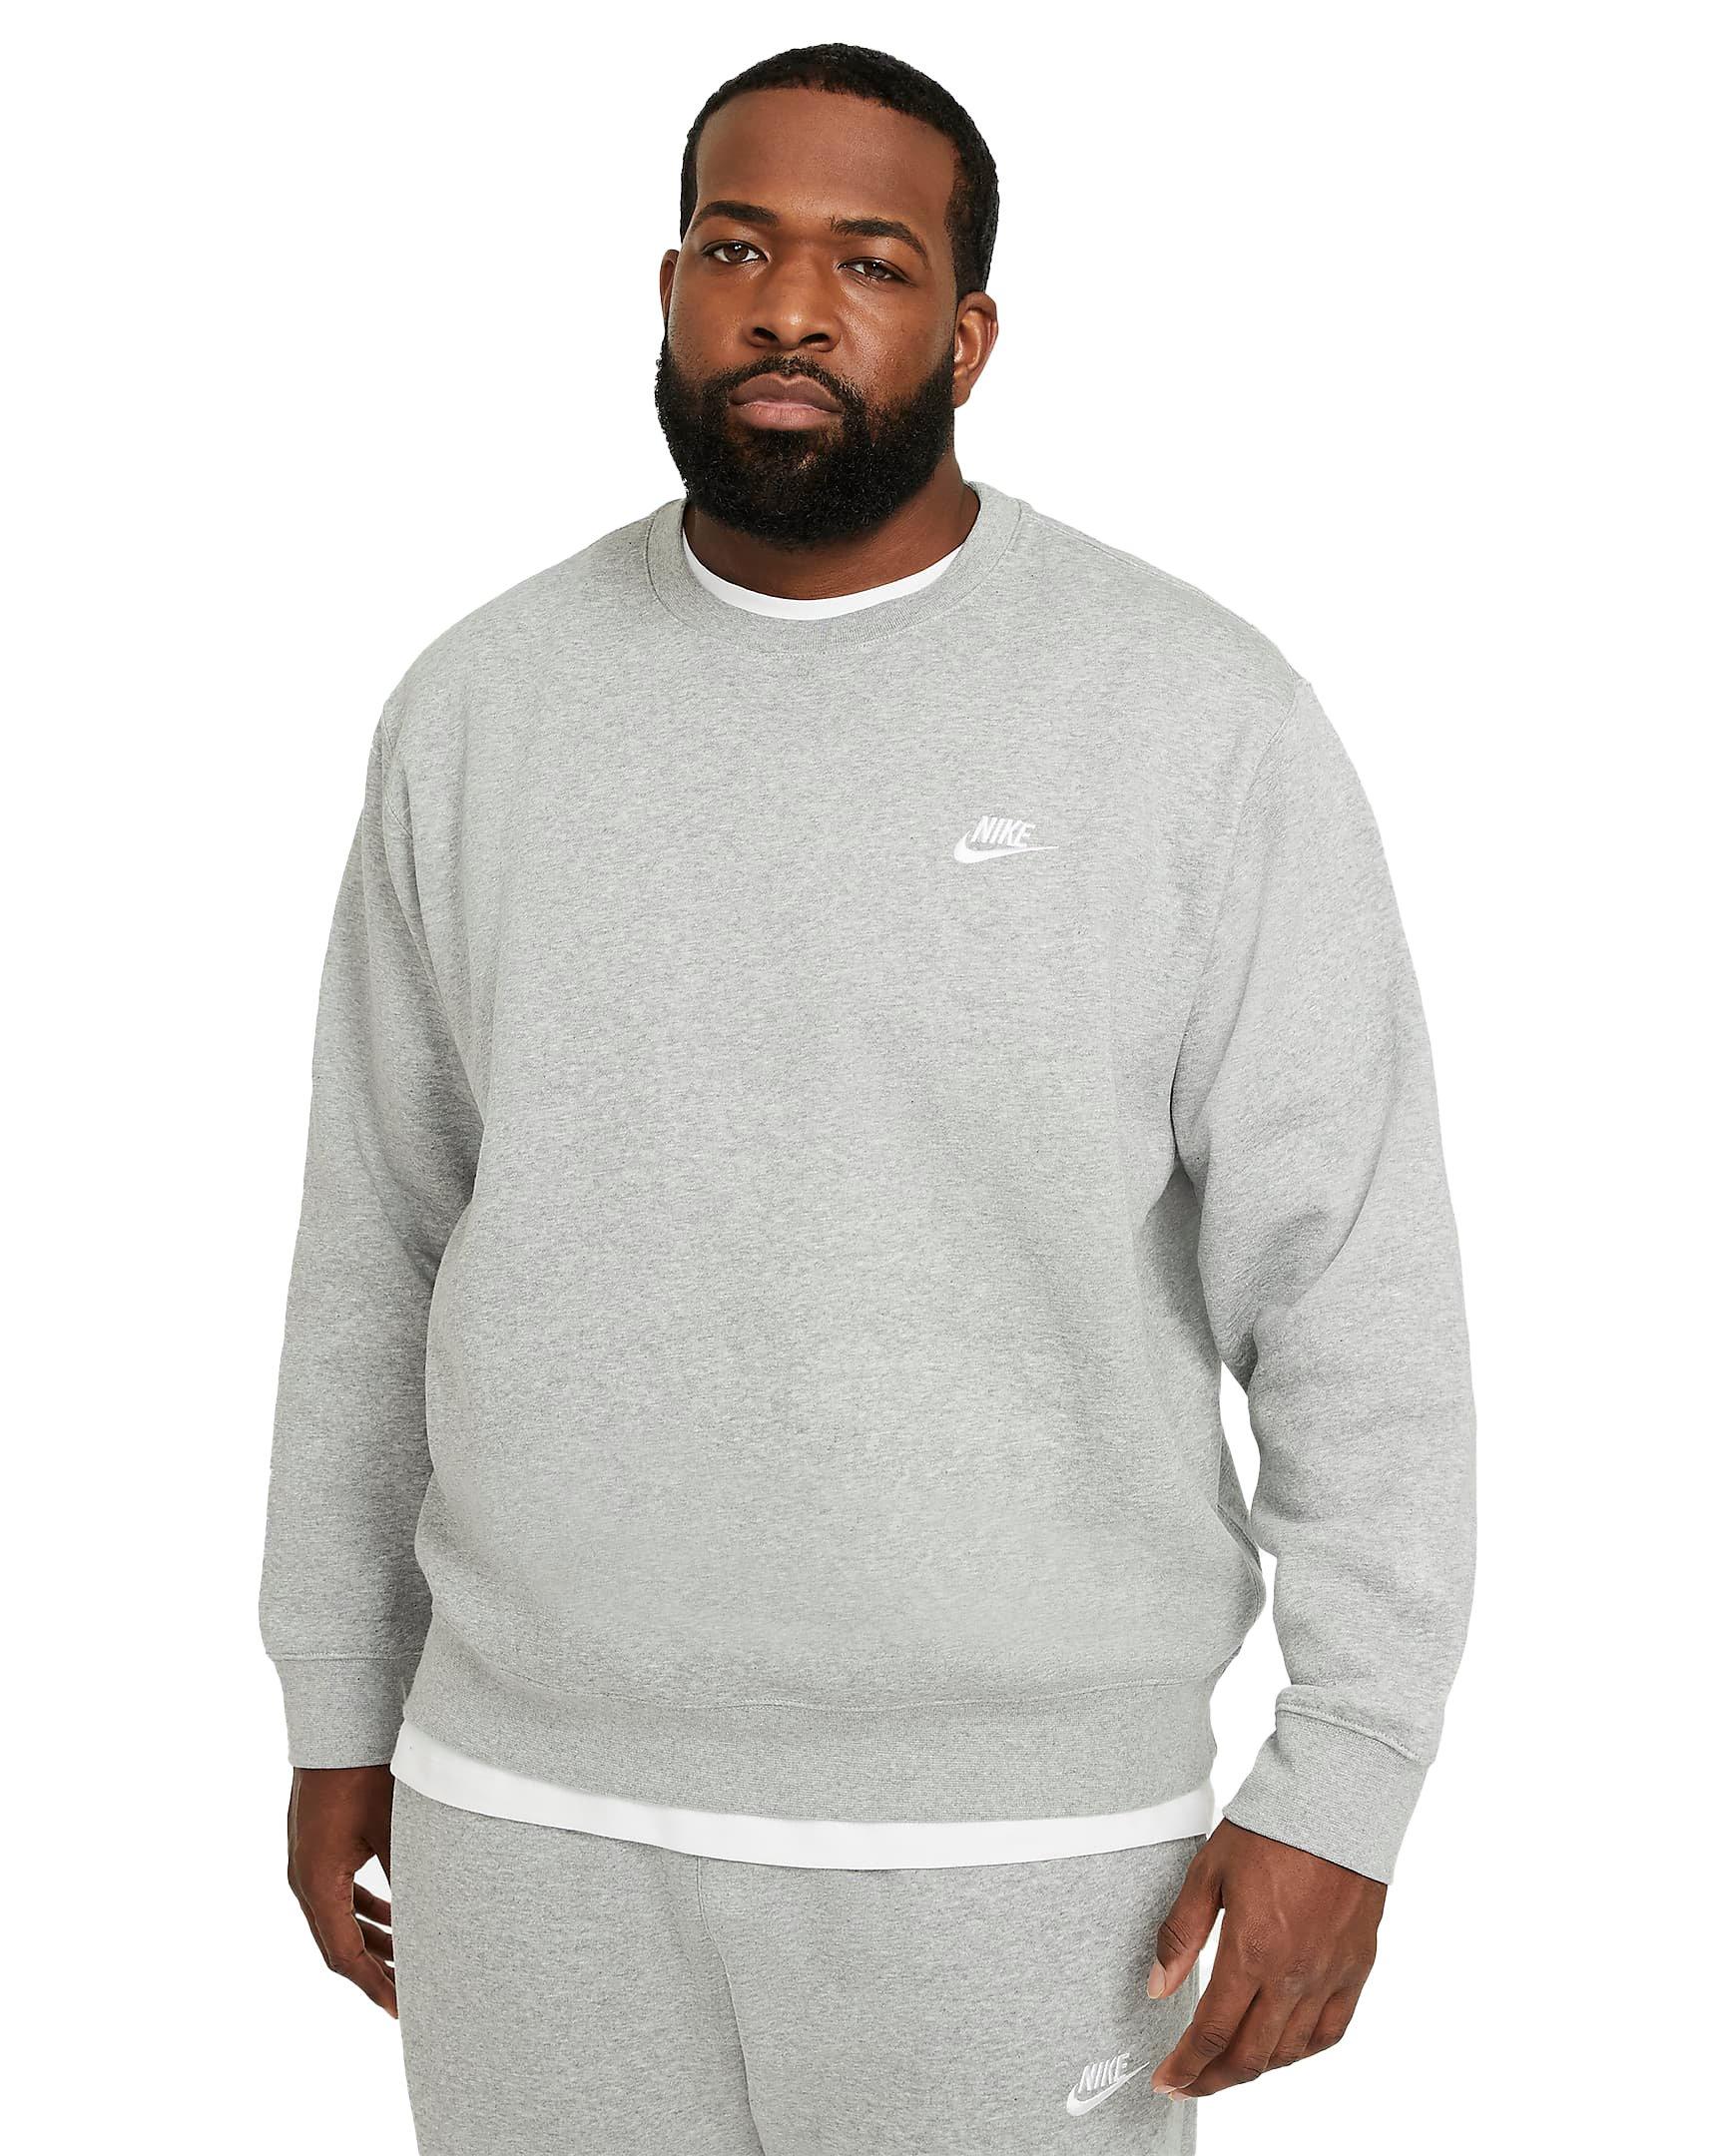 Platteland Coöperatie spleet Nike Men's Big & Tall Grey Sportswear Club Fleece Crew Sweatshirt